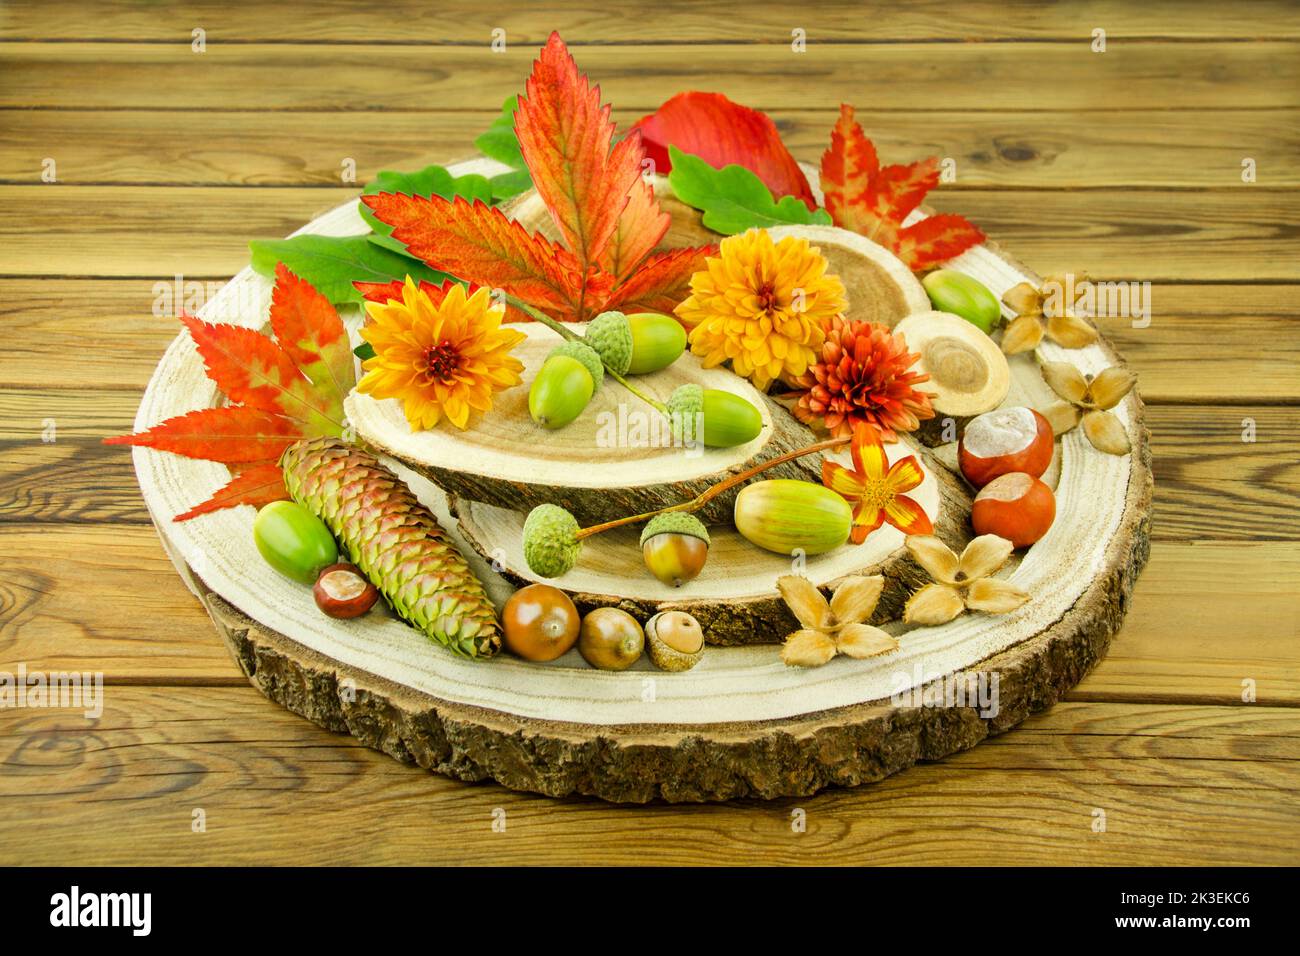 Natürliche Dekoration im Herbst mit Kastanien, Eicheln, Blumen und Herbstlaub auf Holz Foto de stock